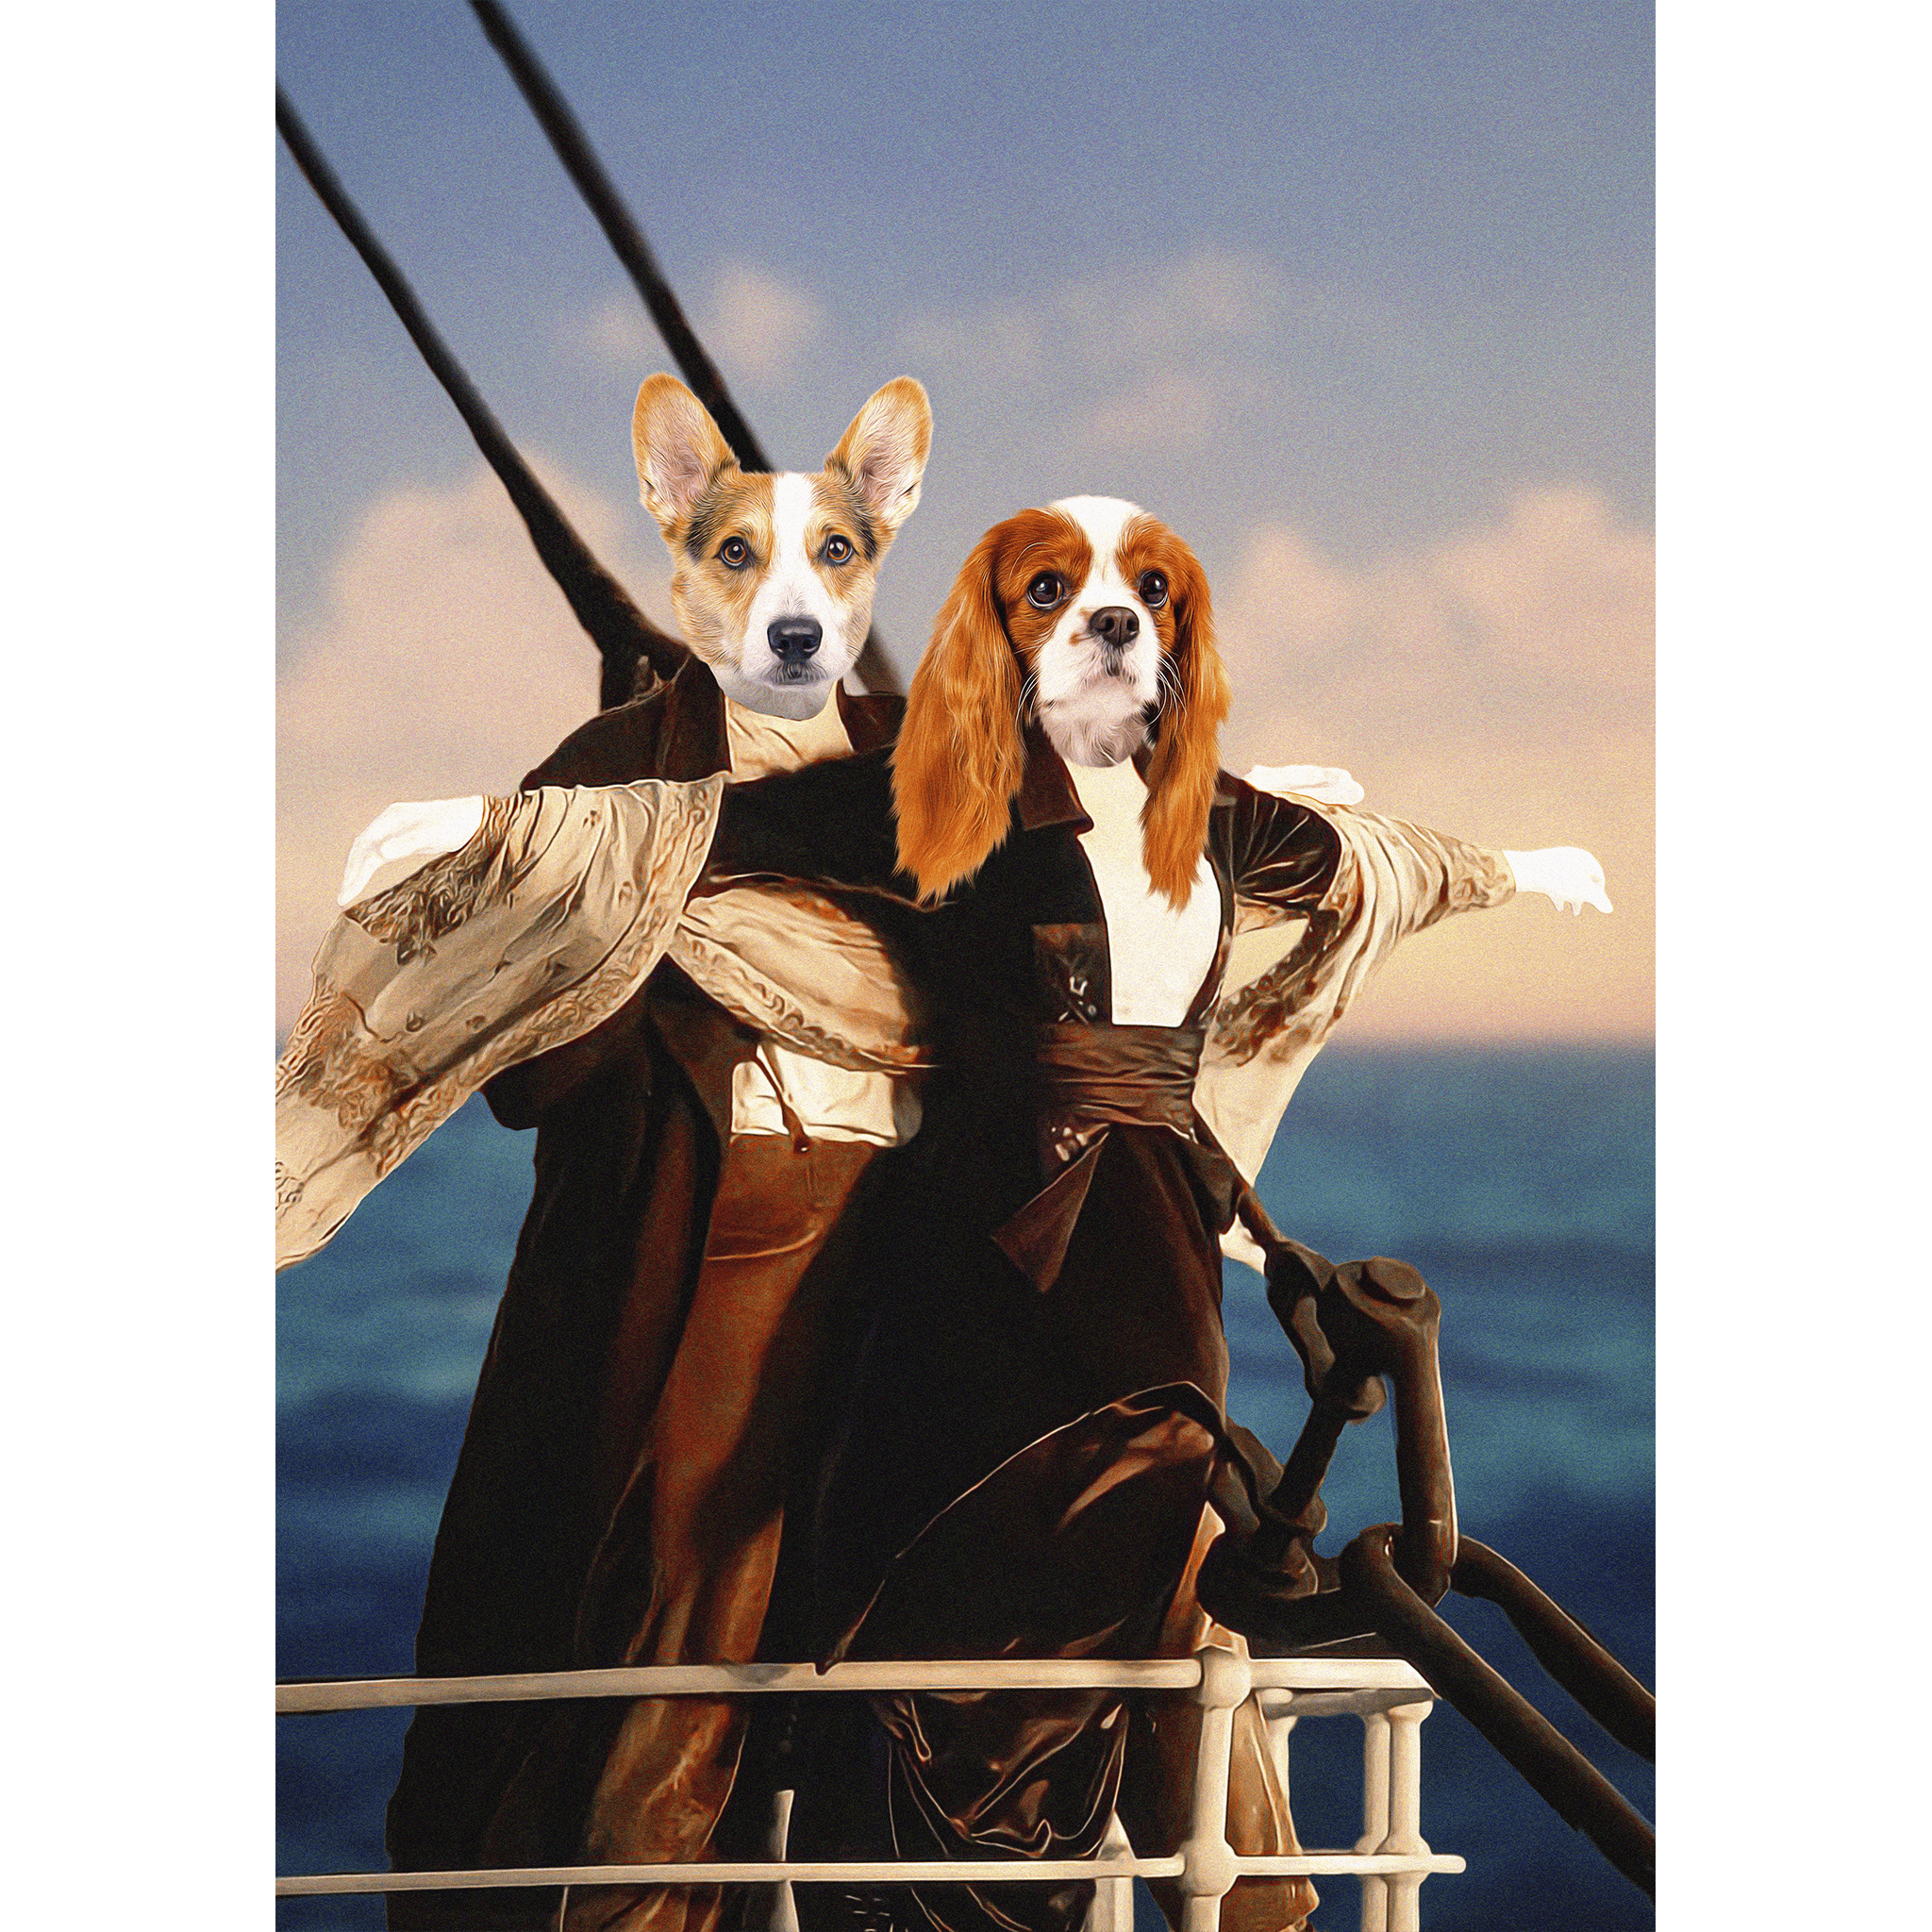 Retrato digital de 2 mascotas de &#39;Titanic Doggos&#39;